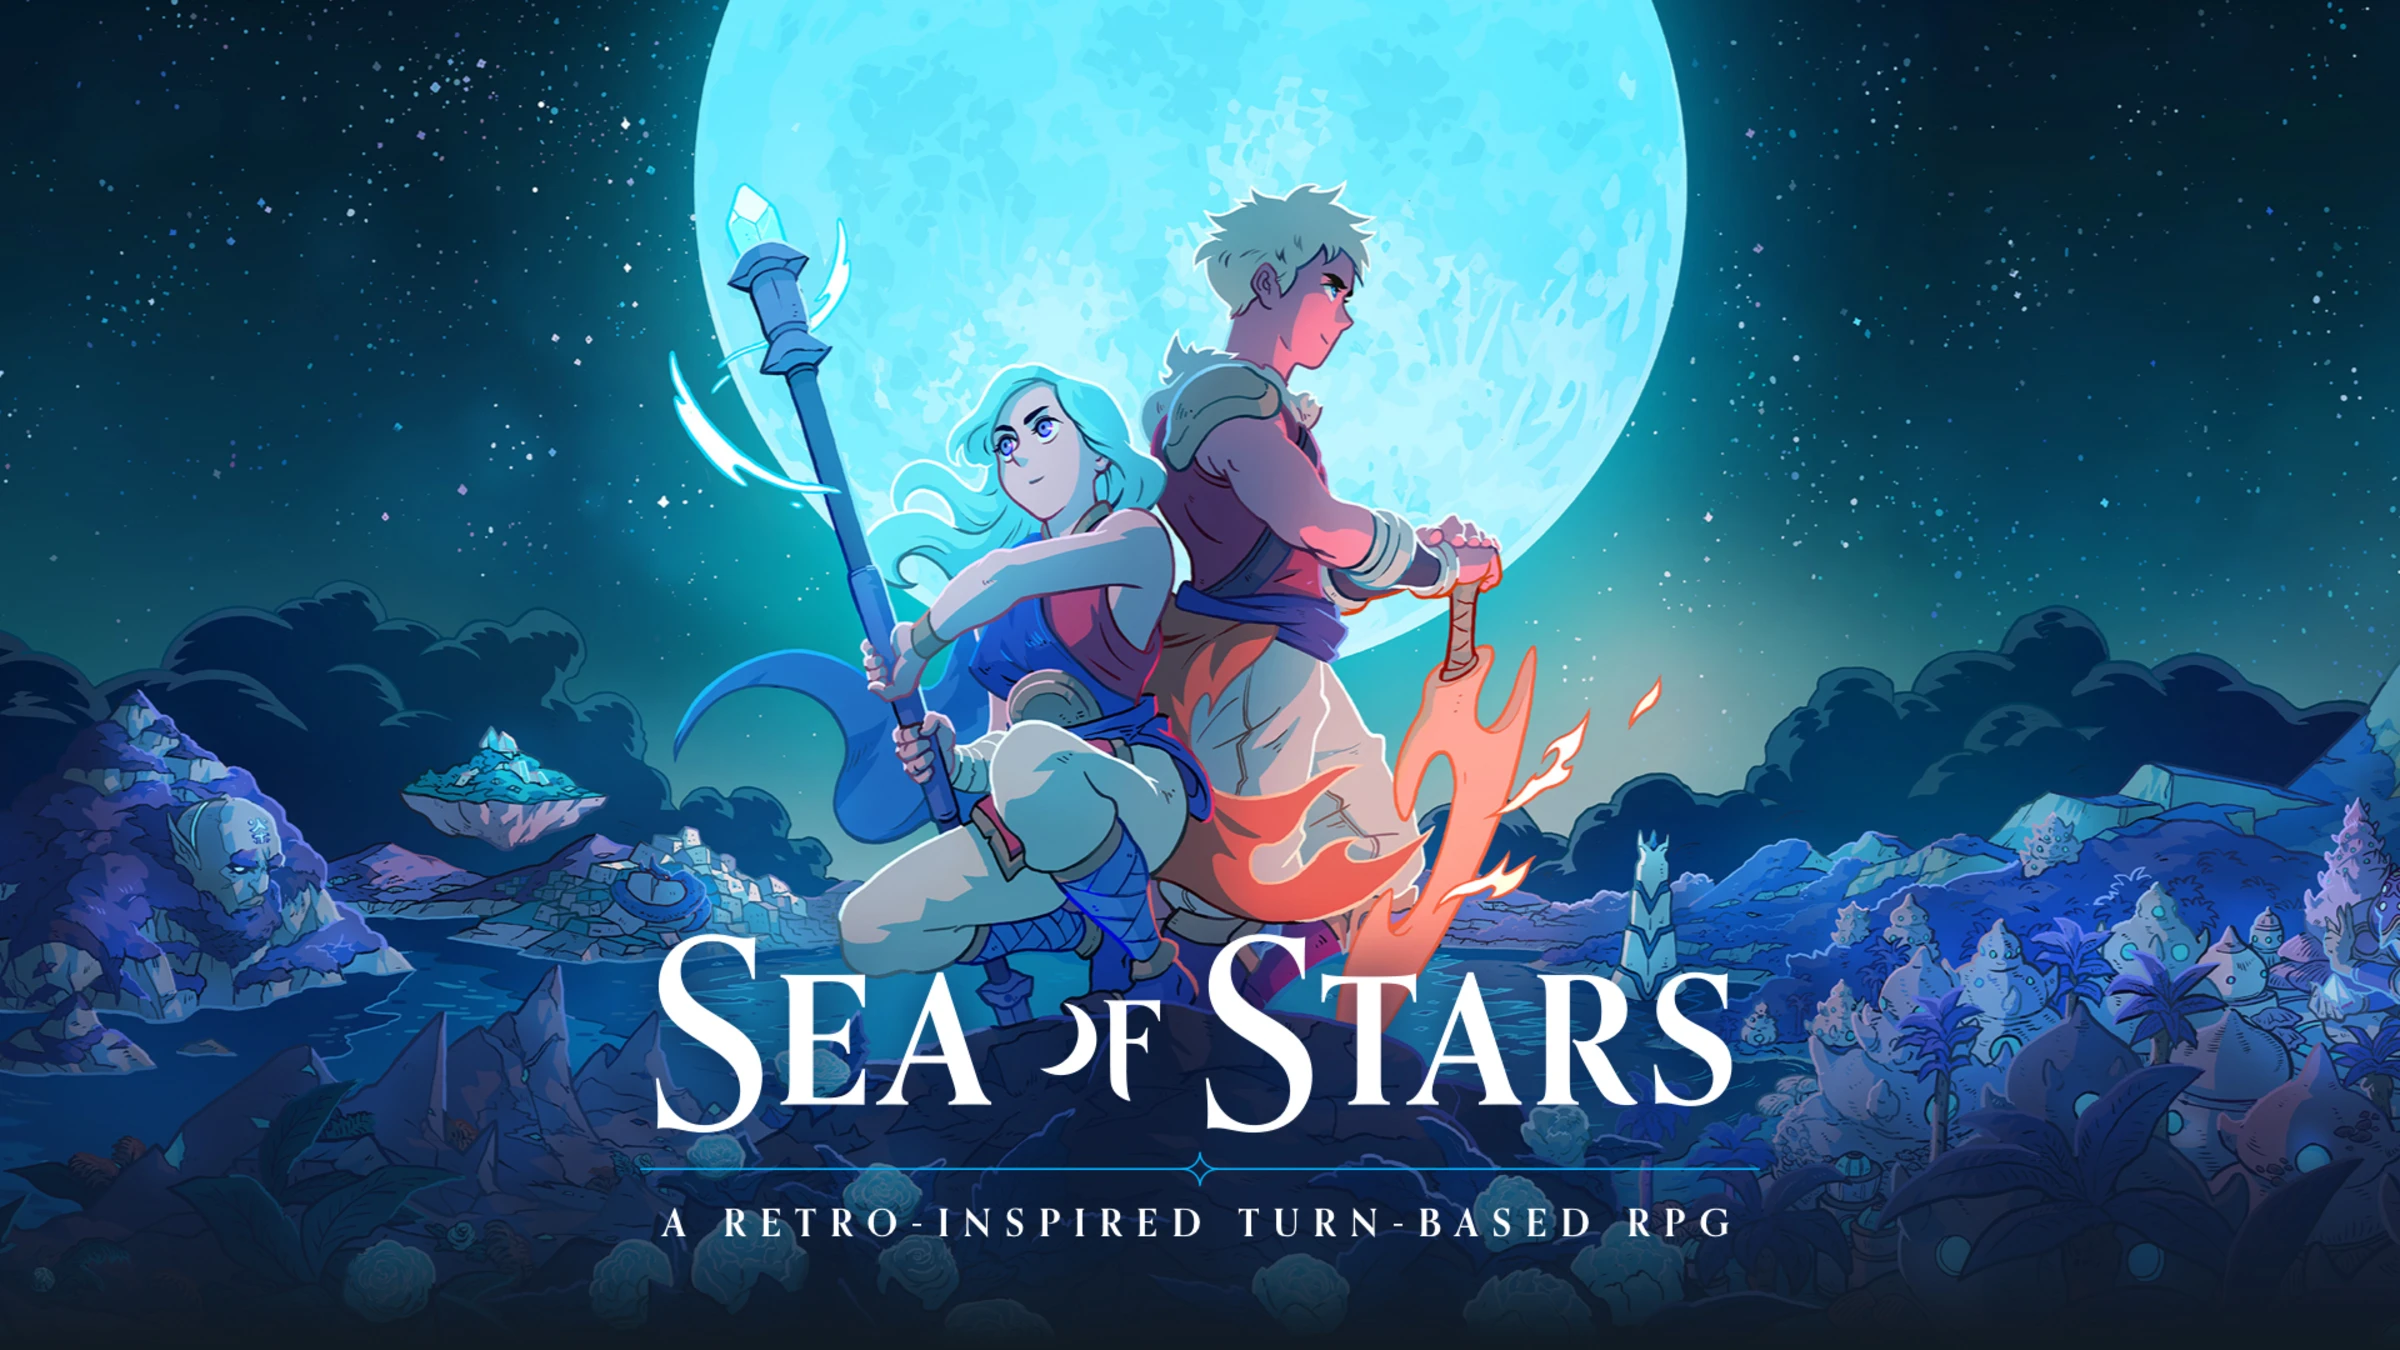 Gra RPG Sea of Stars sprzedała się w ponad 100 000 egzemplarzy w pierwszym dniu premiery